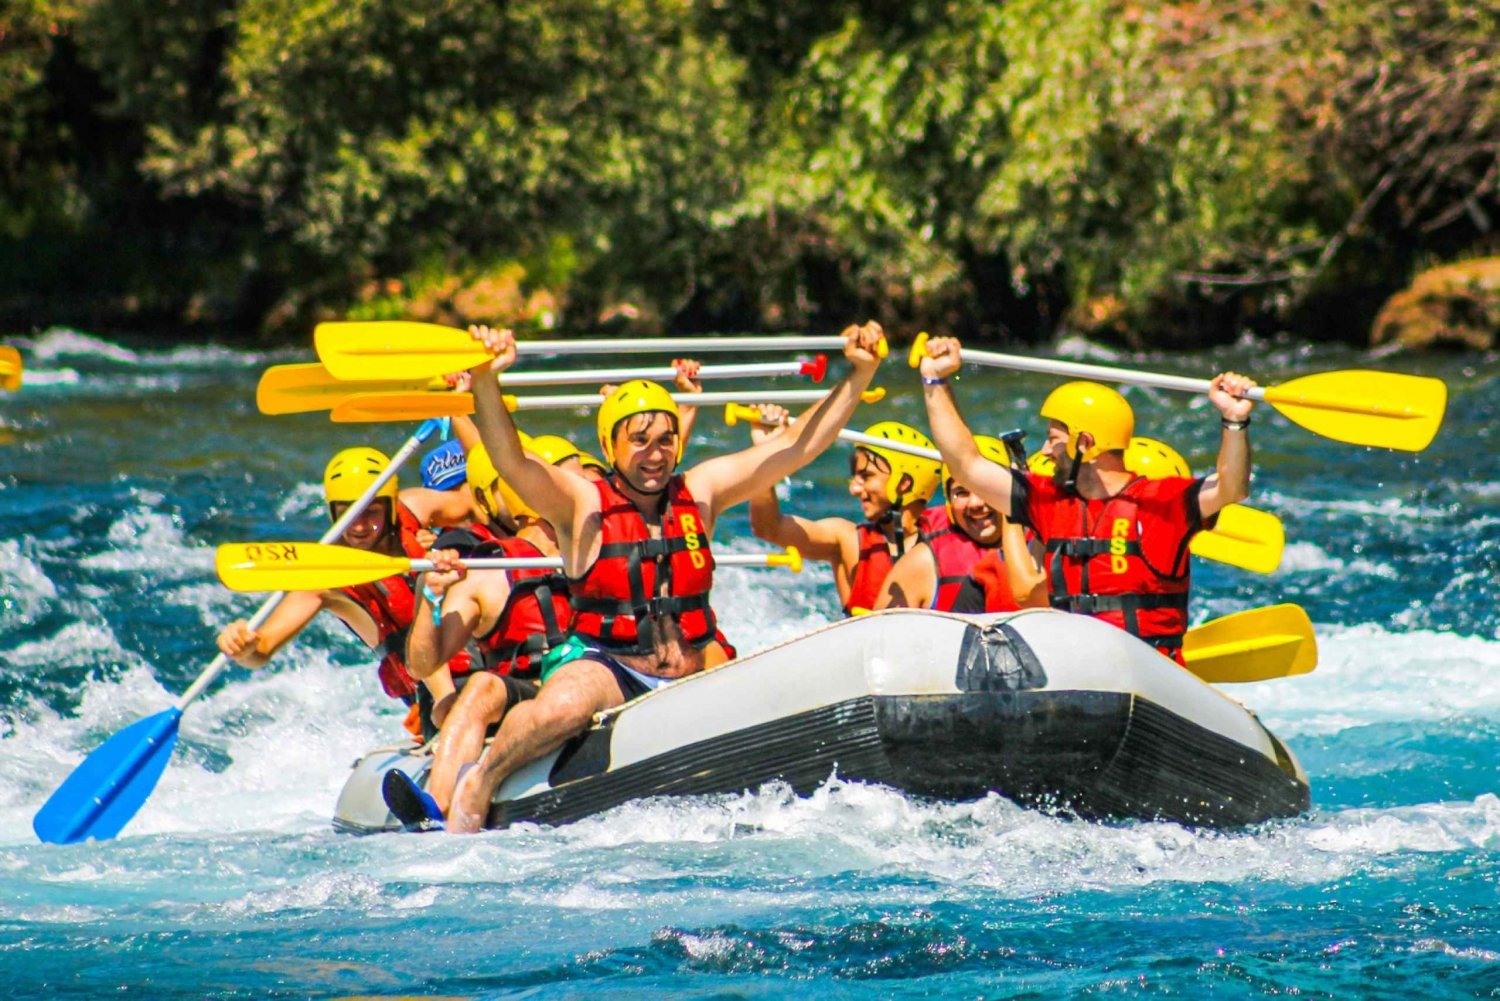 Bodrum: Dalaman River Rafting Tour